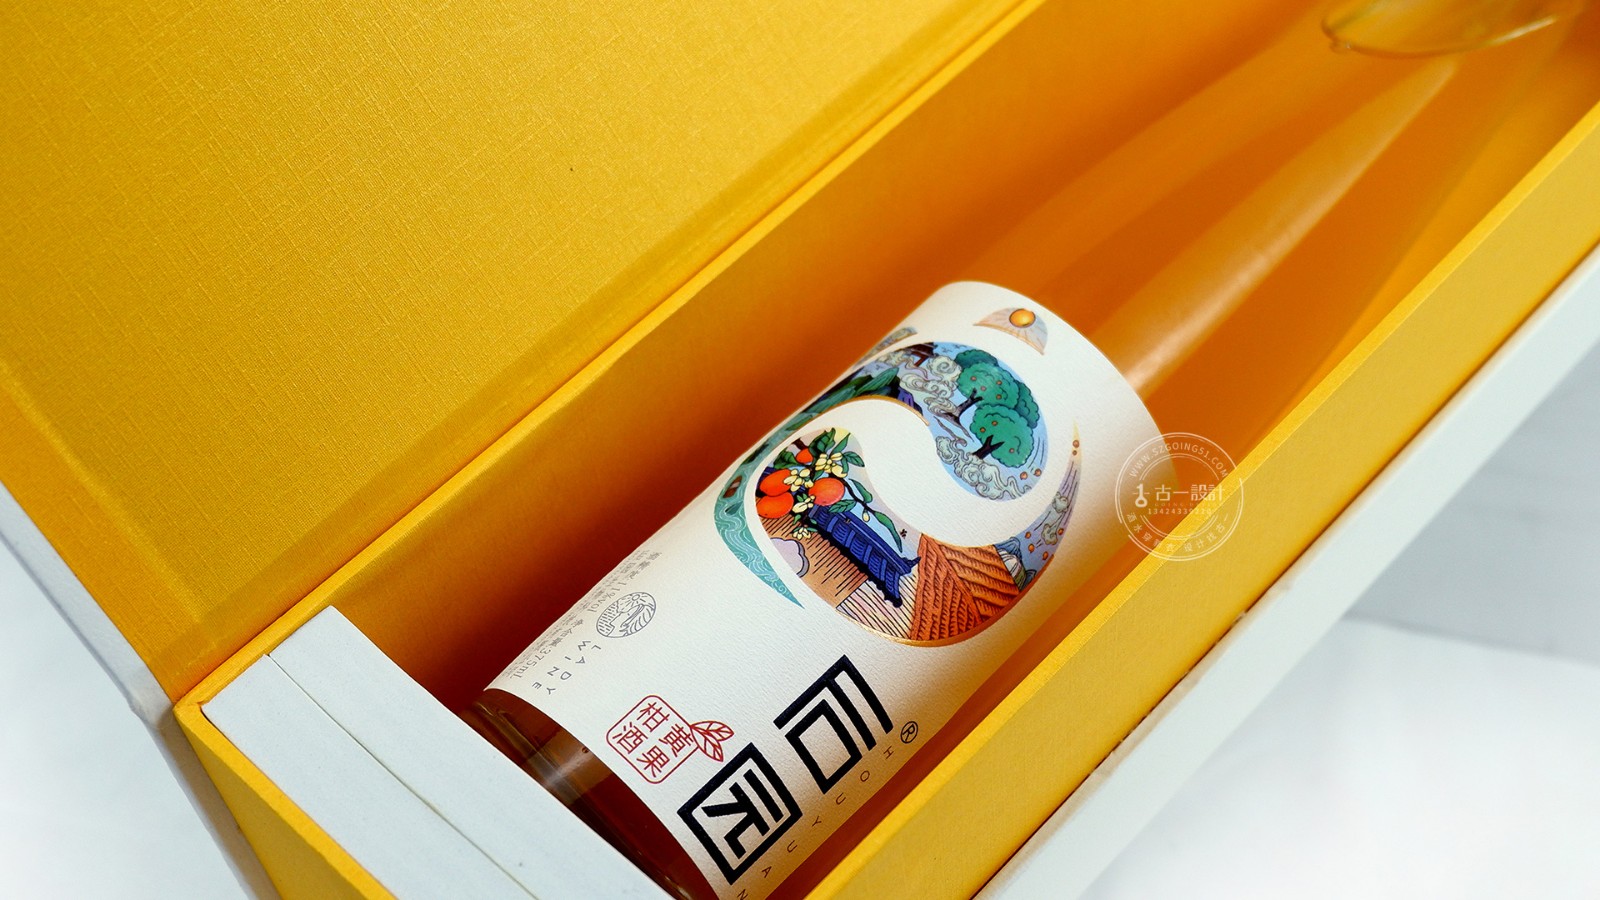 深圳酒包装设计公司,果酒酒标设计,果酒礼盒设计,古一设计